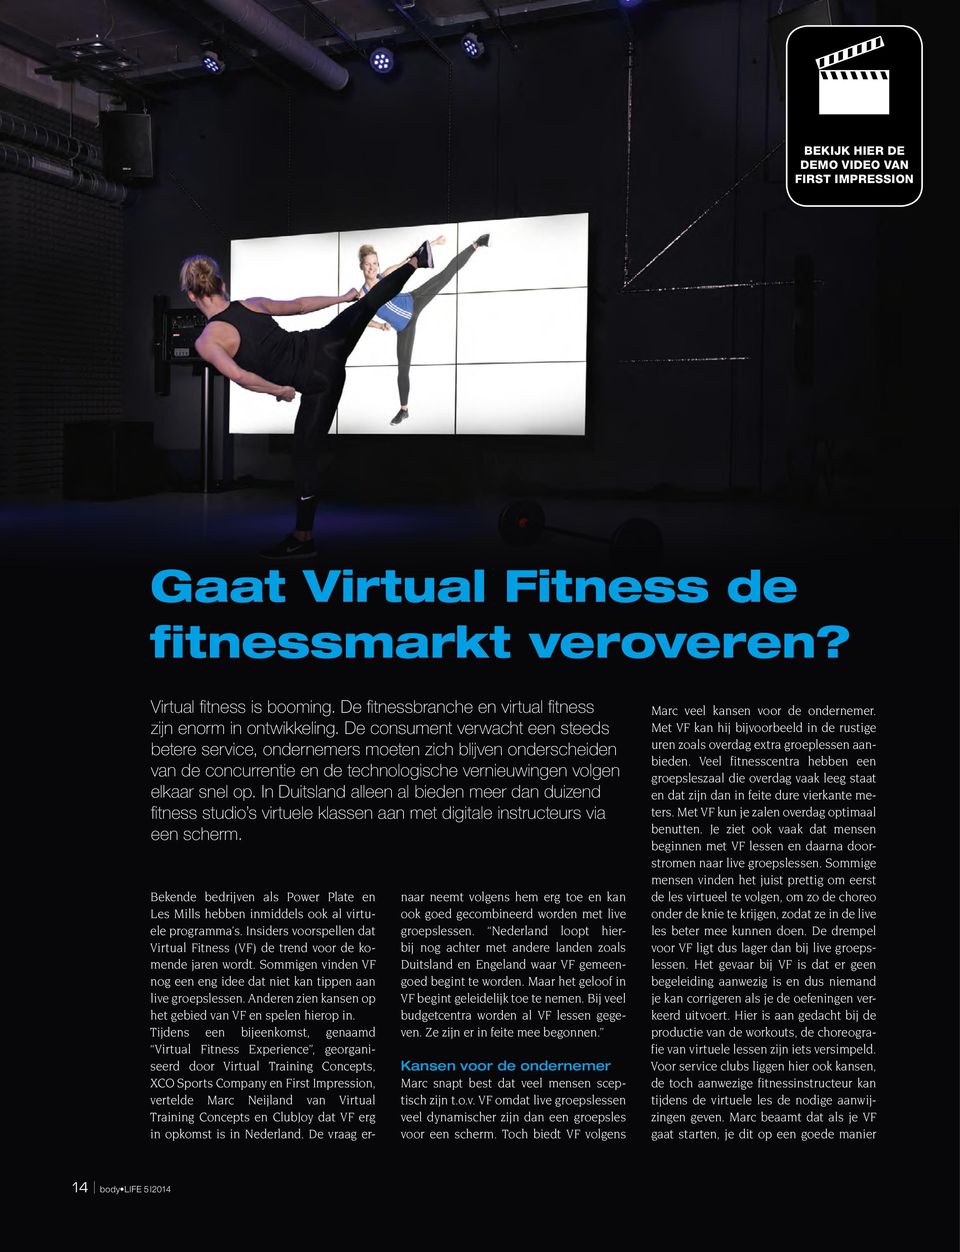 In Duitsland alleen al bieden meer dan duizend fitness studio s virtuele klassen aan met digitale instructeurs via een scherm.